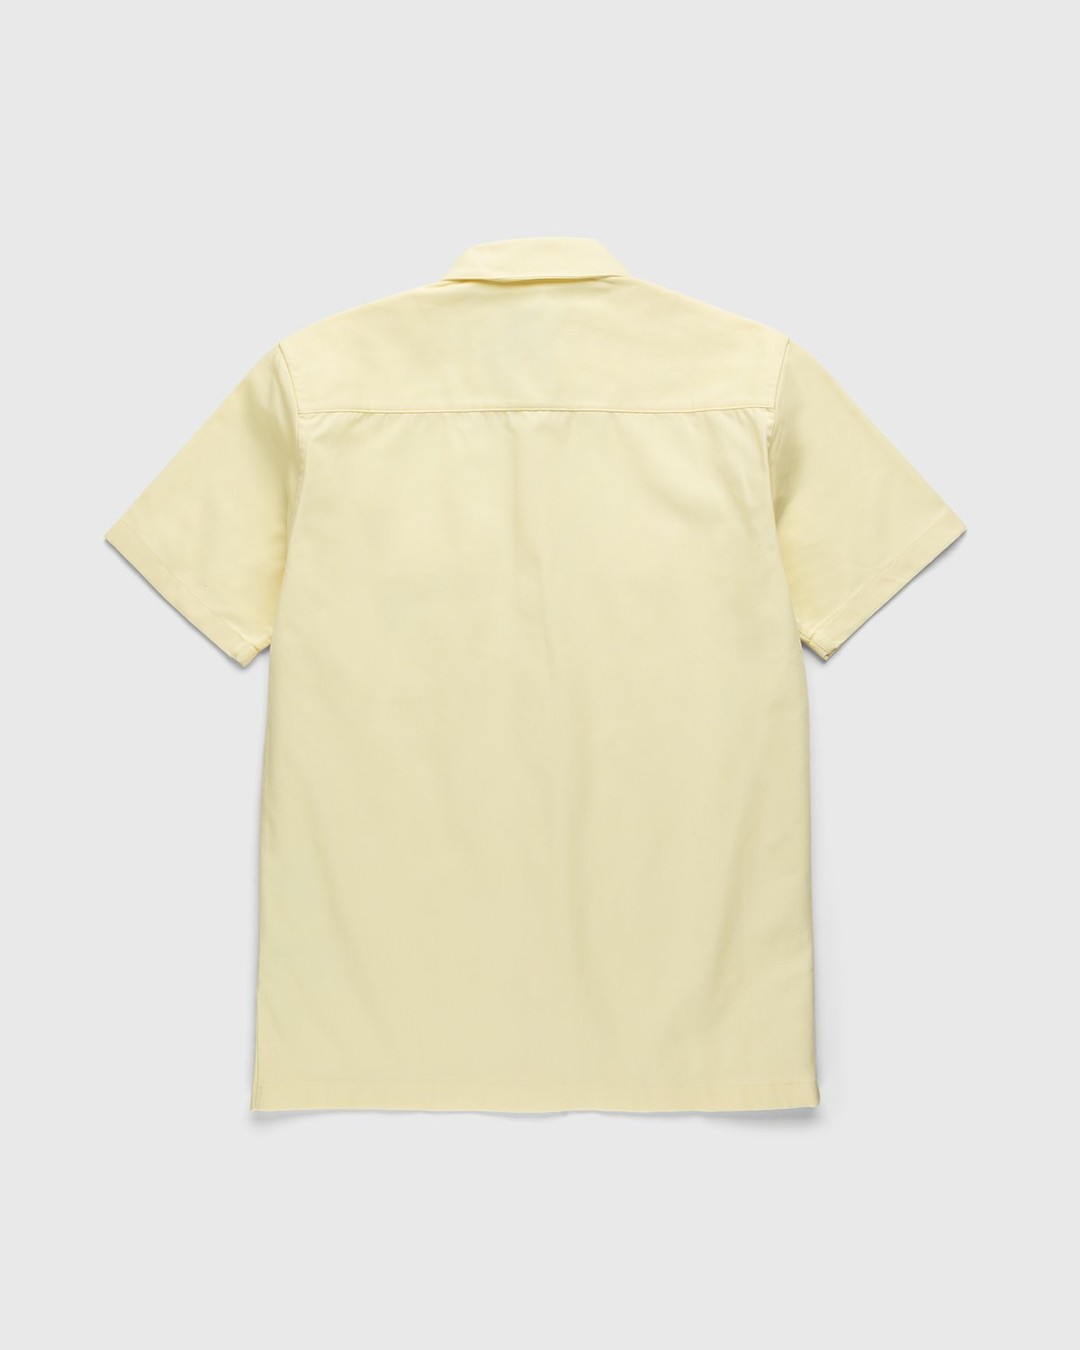 Carhartt WIP – Master Shirt Soft Yellow - Shortsleeve Shirts - Yellow - Image 2